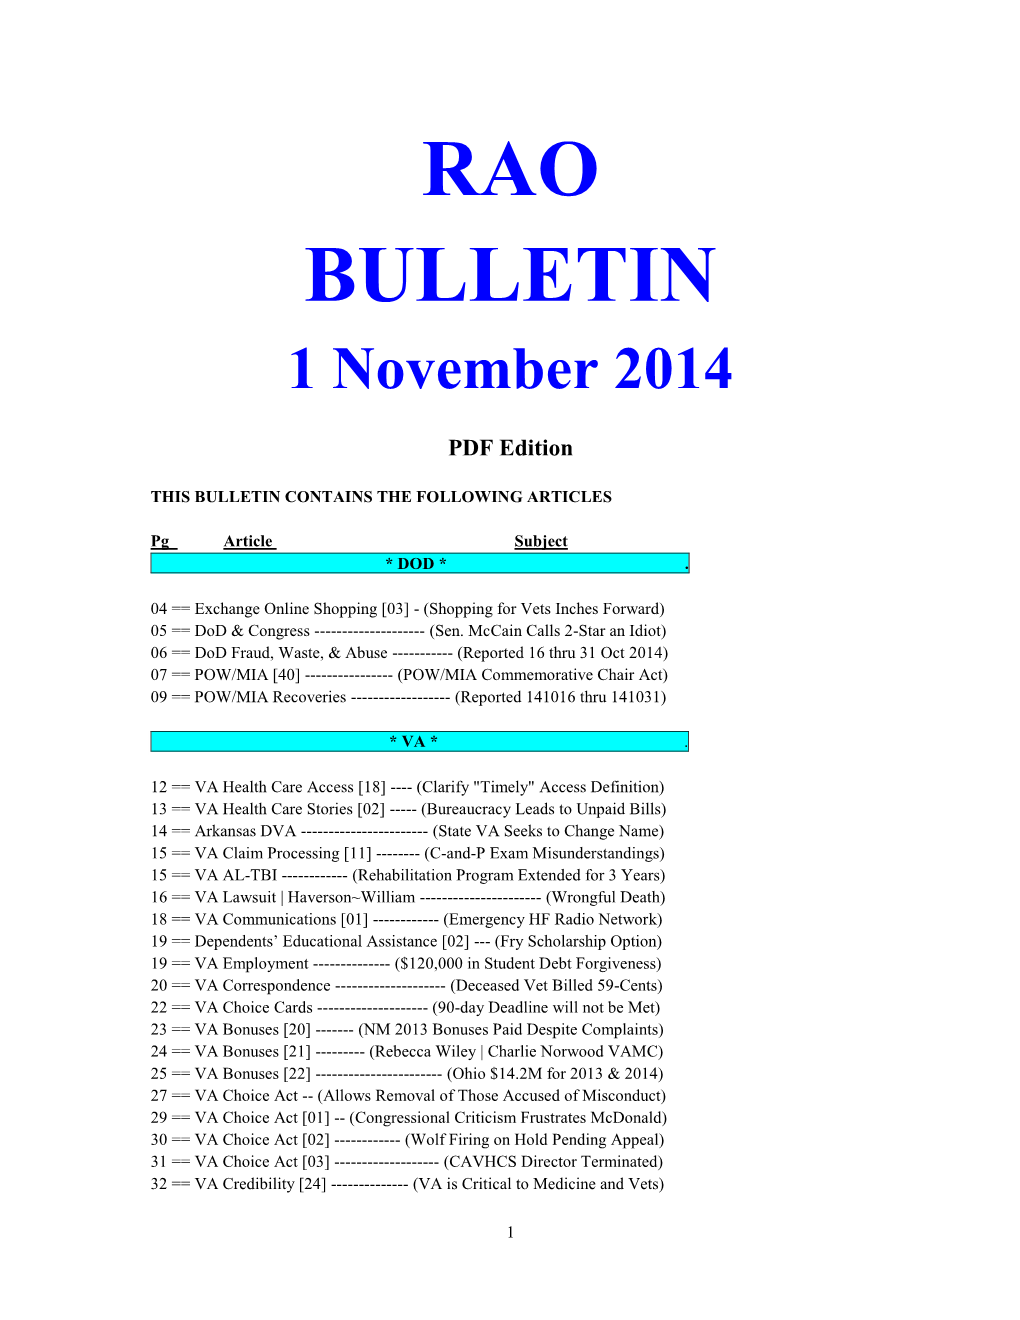 RAO BULLETIN 1 November 2014